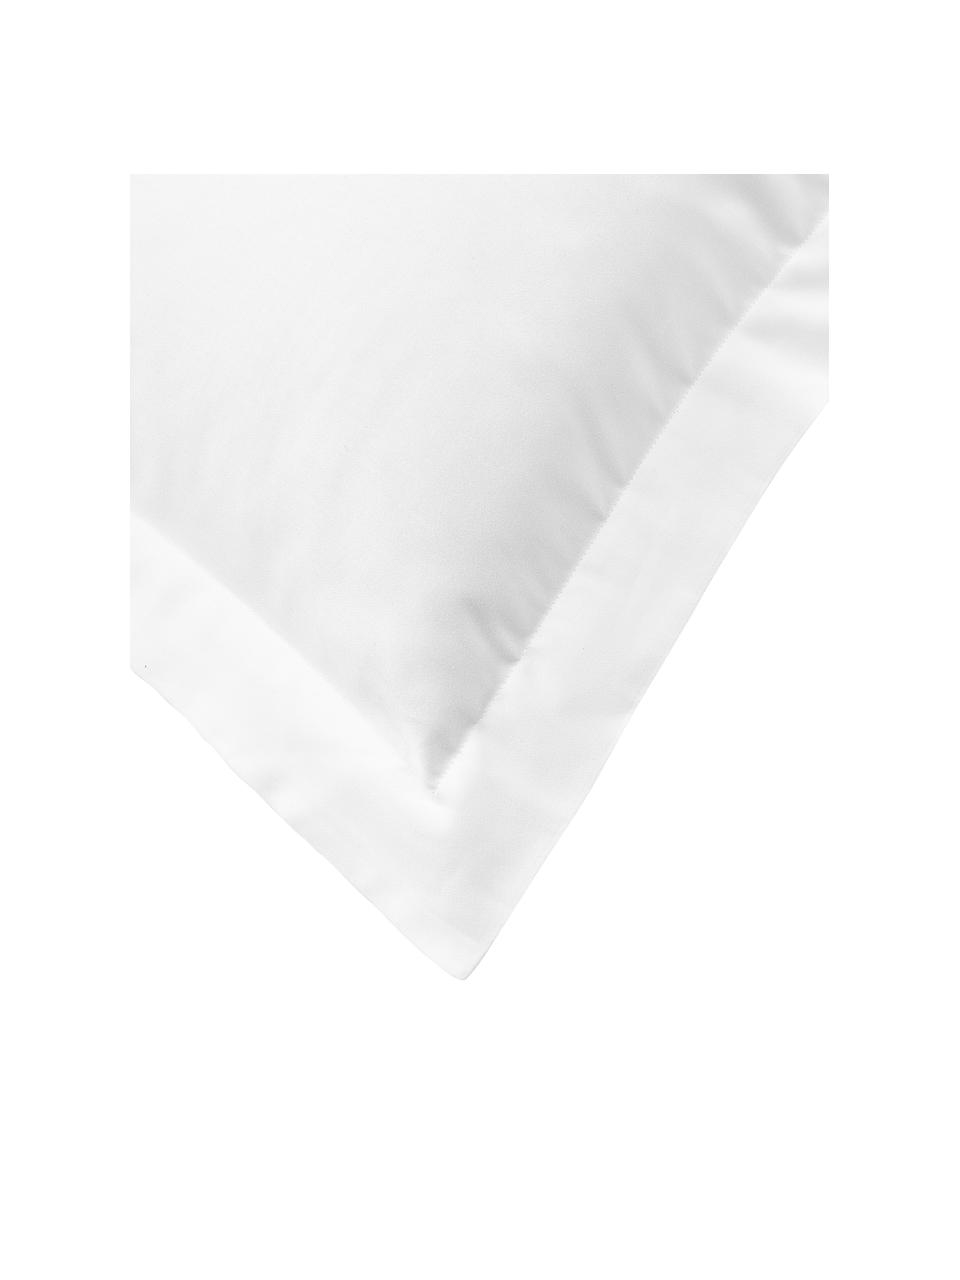 Satijnen kussenhoes Premium van katoen in wit, Weeftechniek: satijn Draaddichtheid 400, Wit, B 60 x L 70 cm